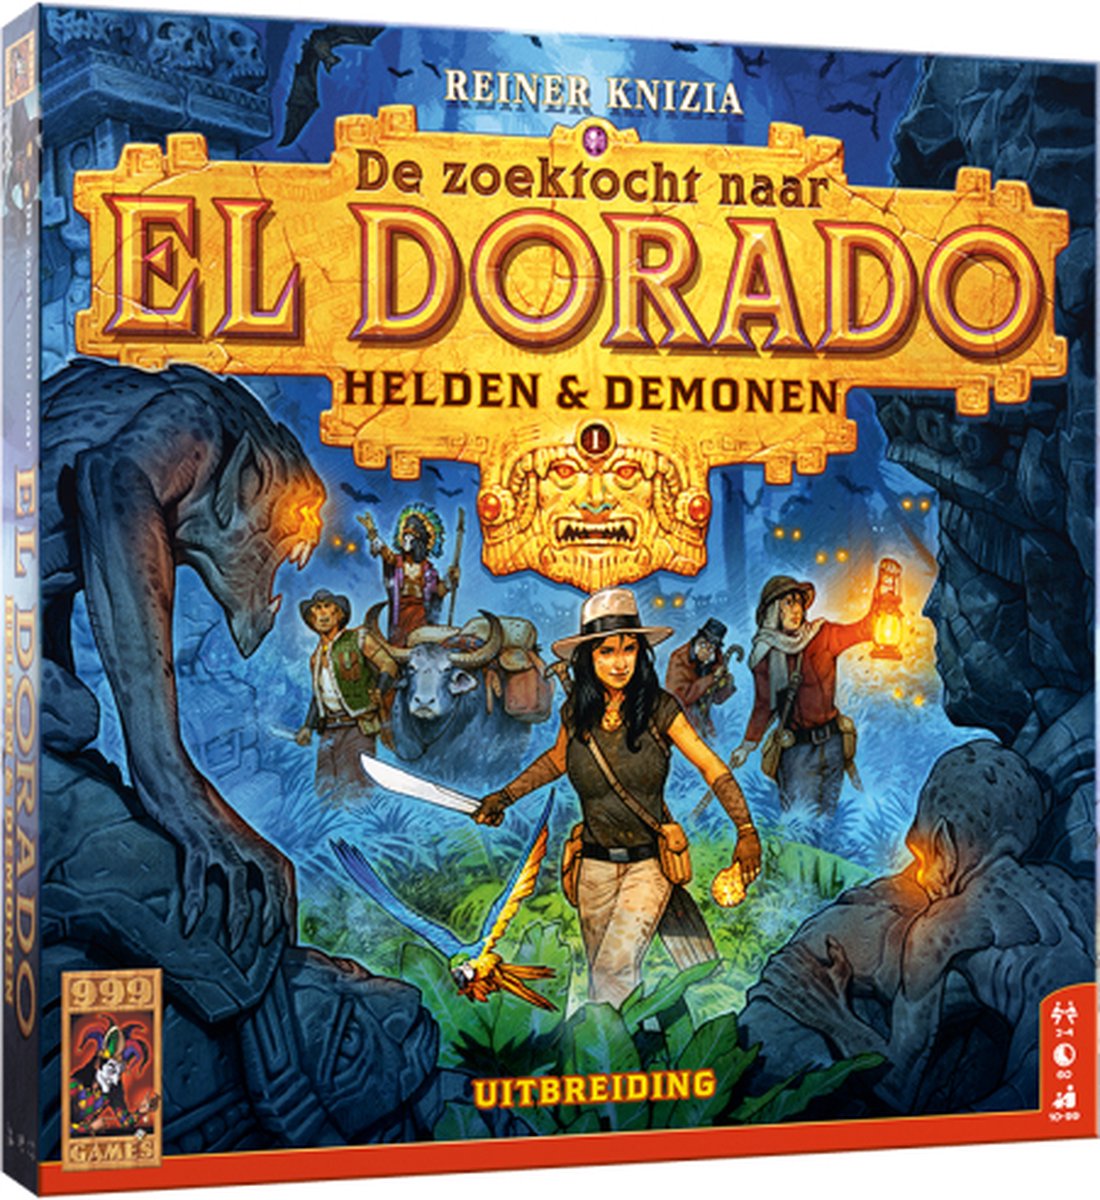 El Dorado uitbreiding: Helden & Demonen